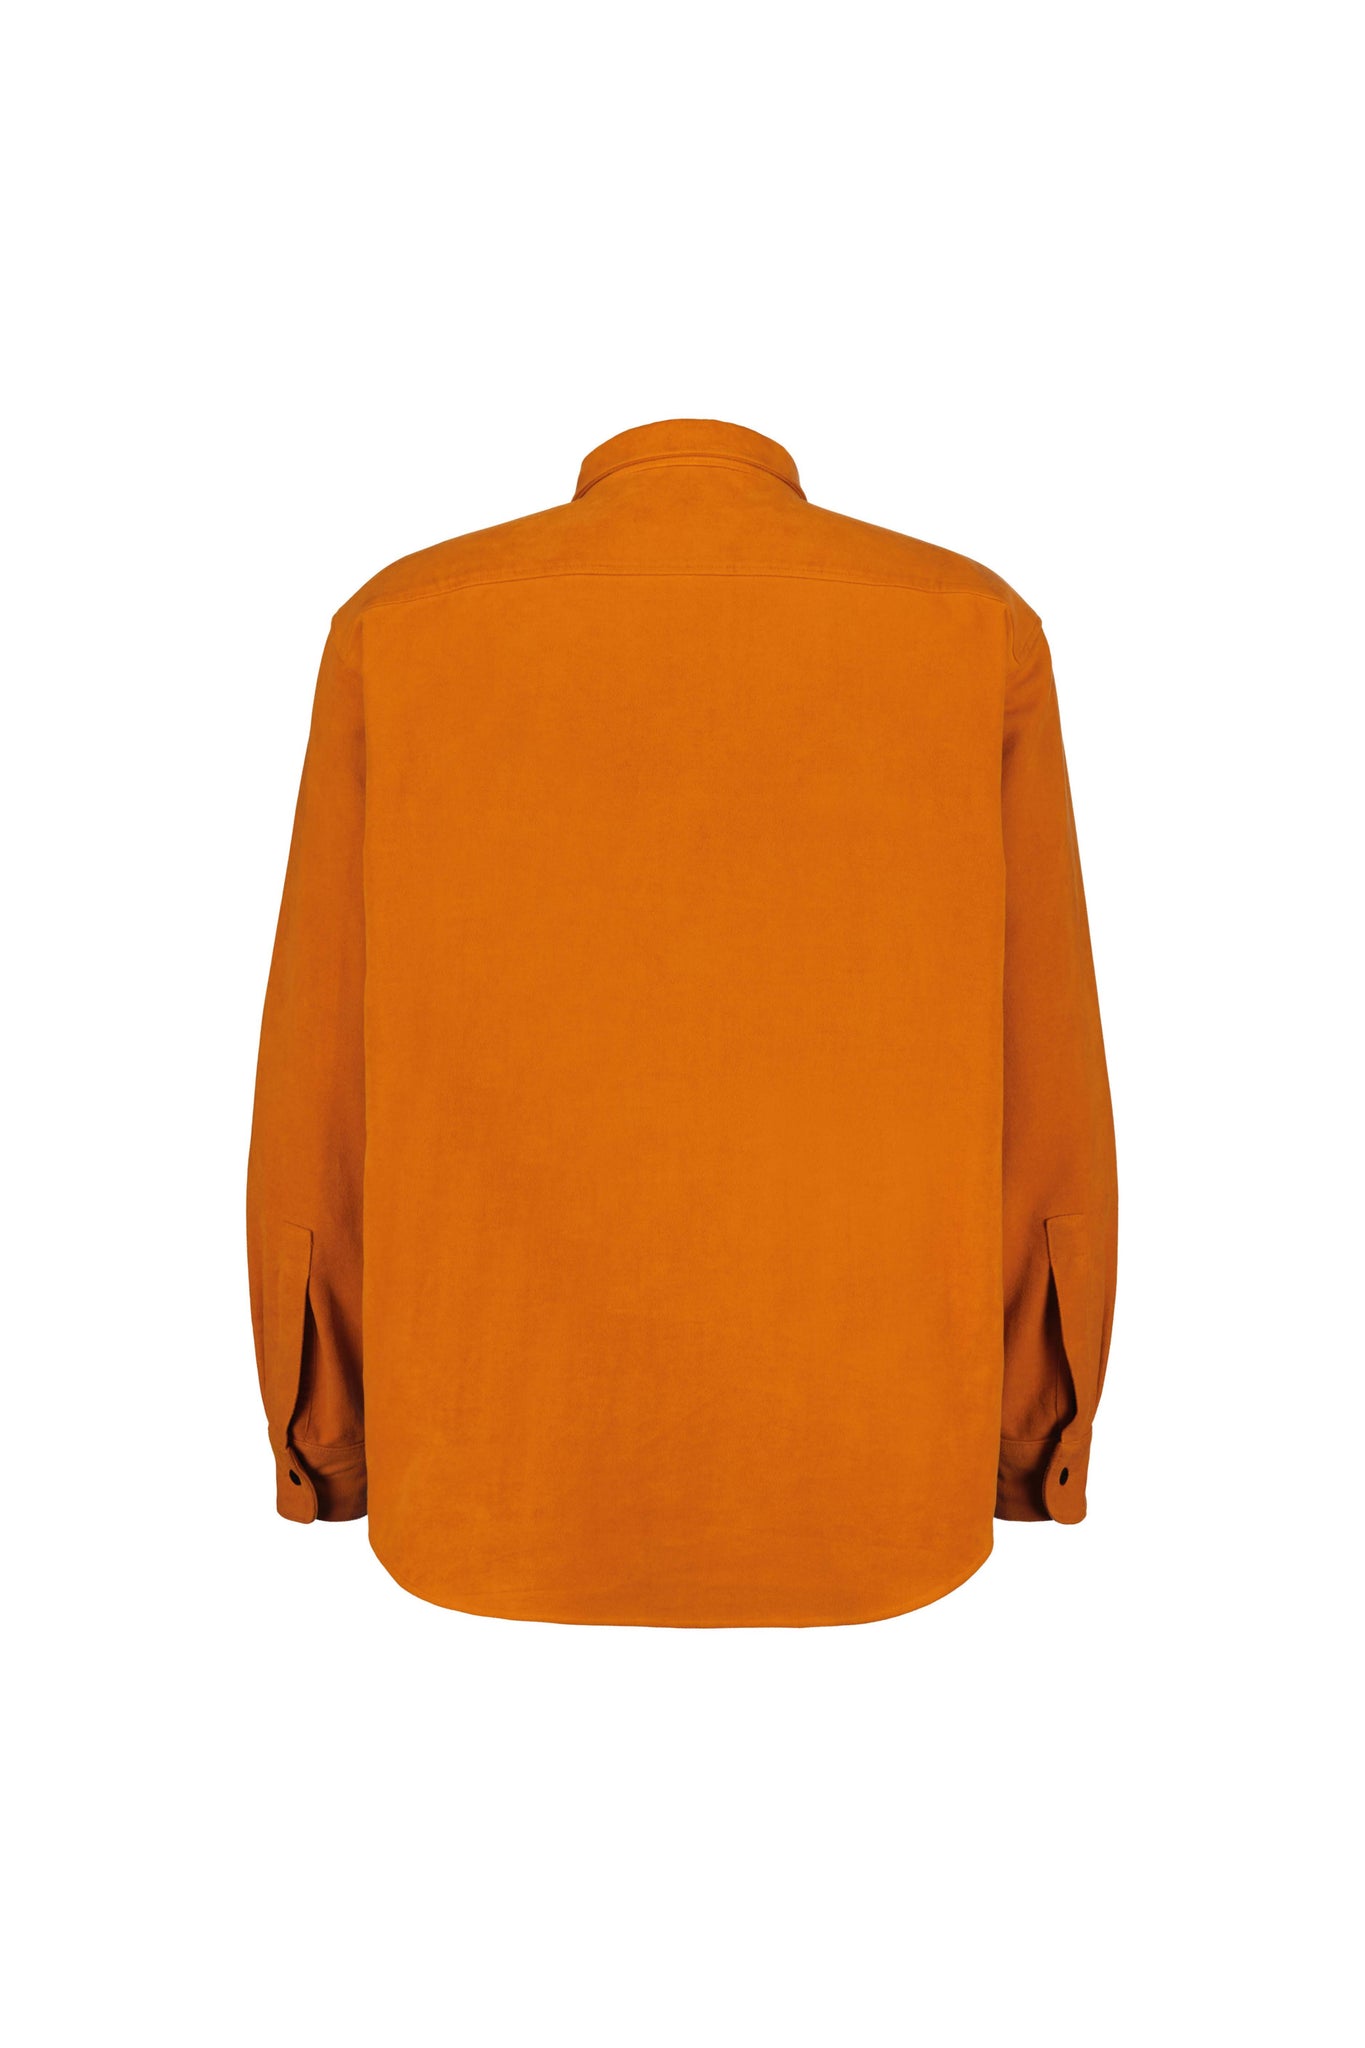 Howard shirt orange